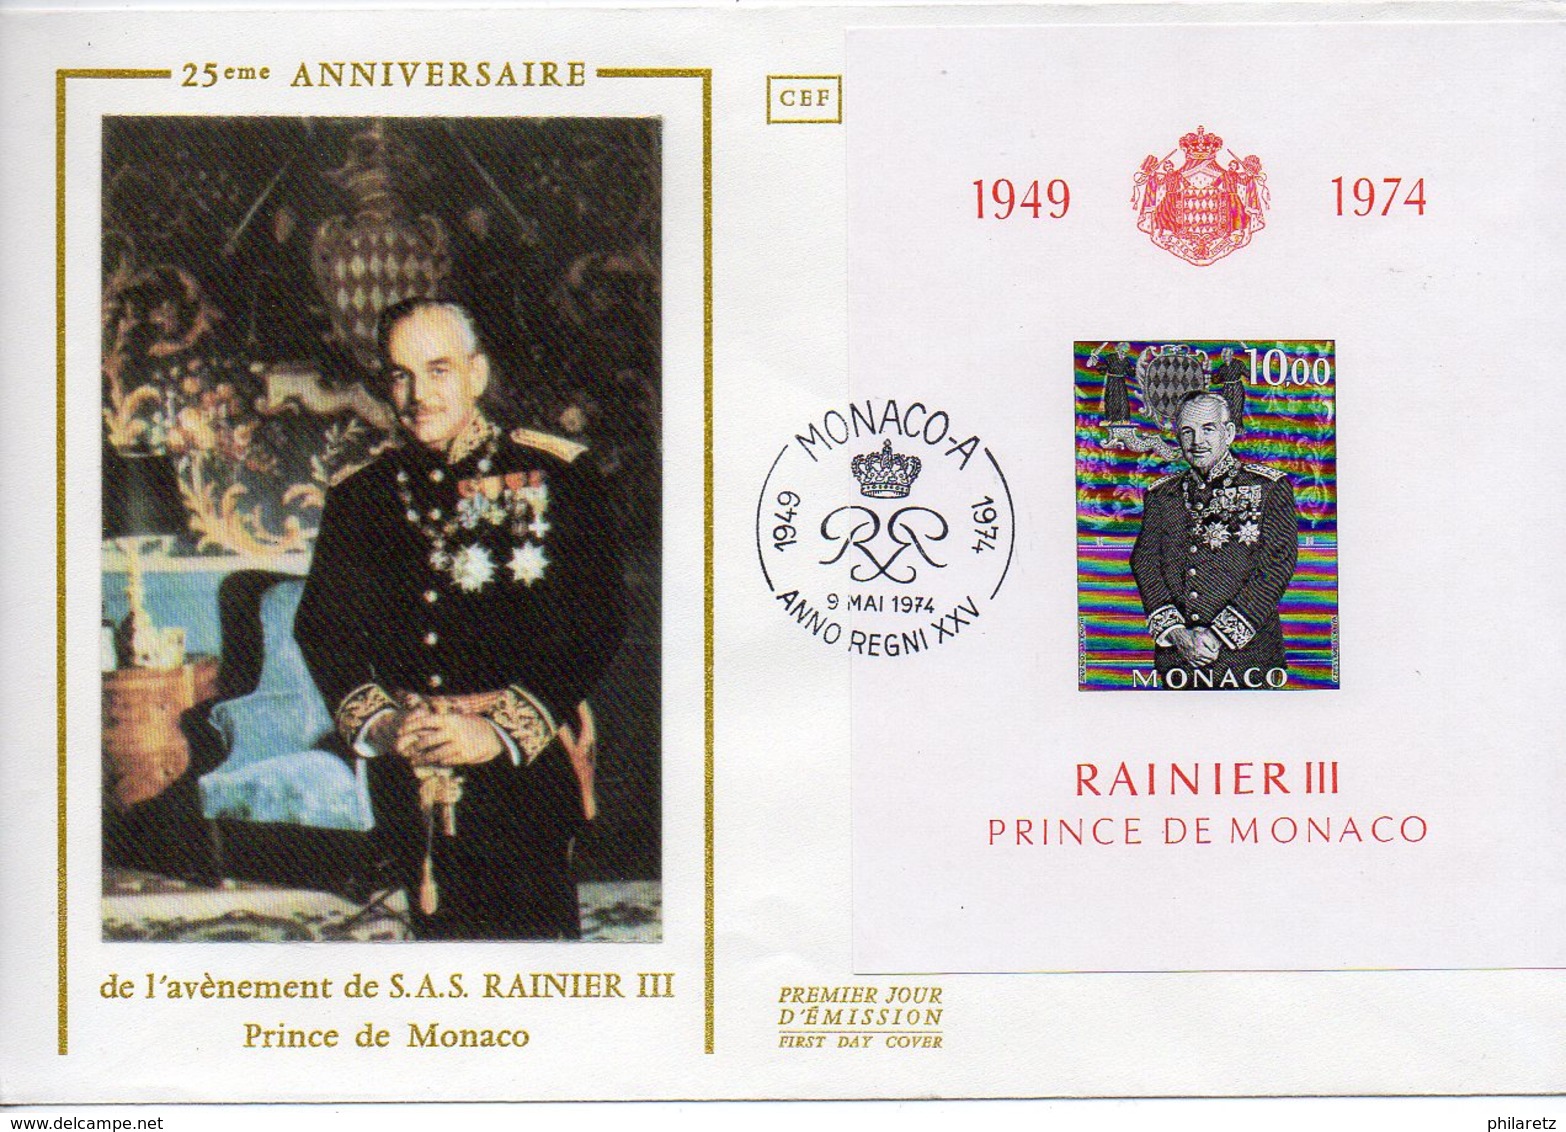 Monaco : Lot de 8 enveloppes + 1 carte Premier Jour diverses et différentes